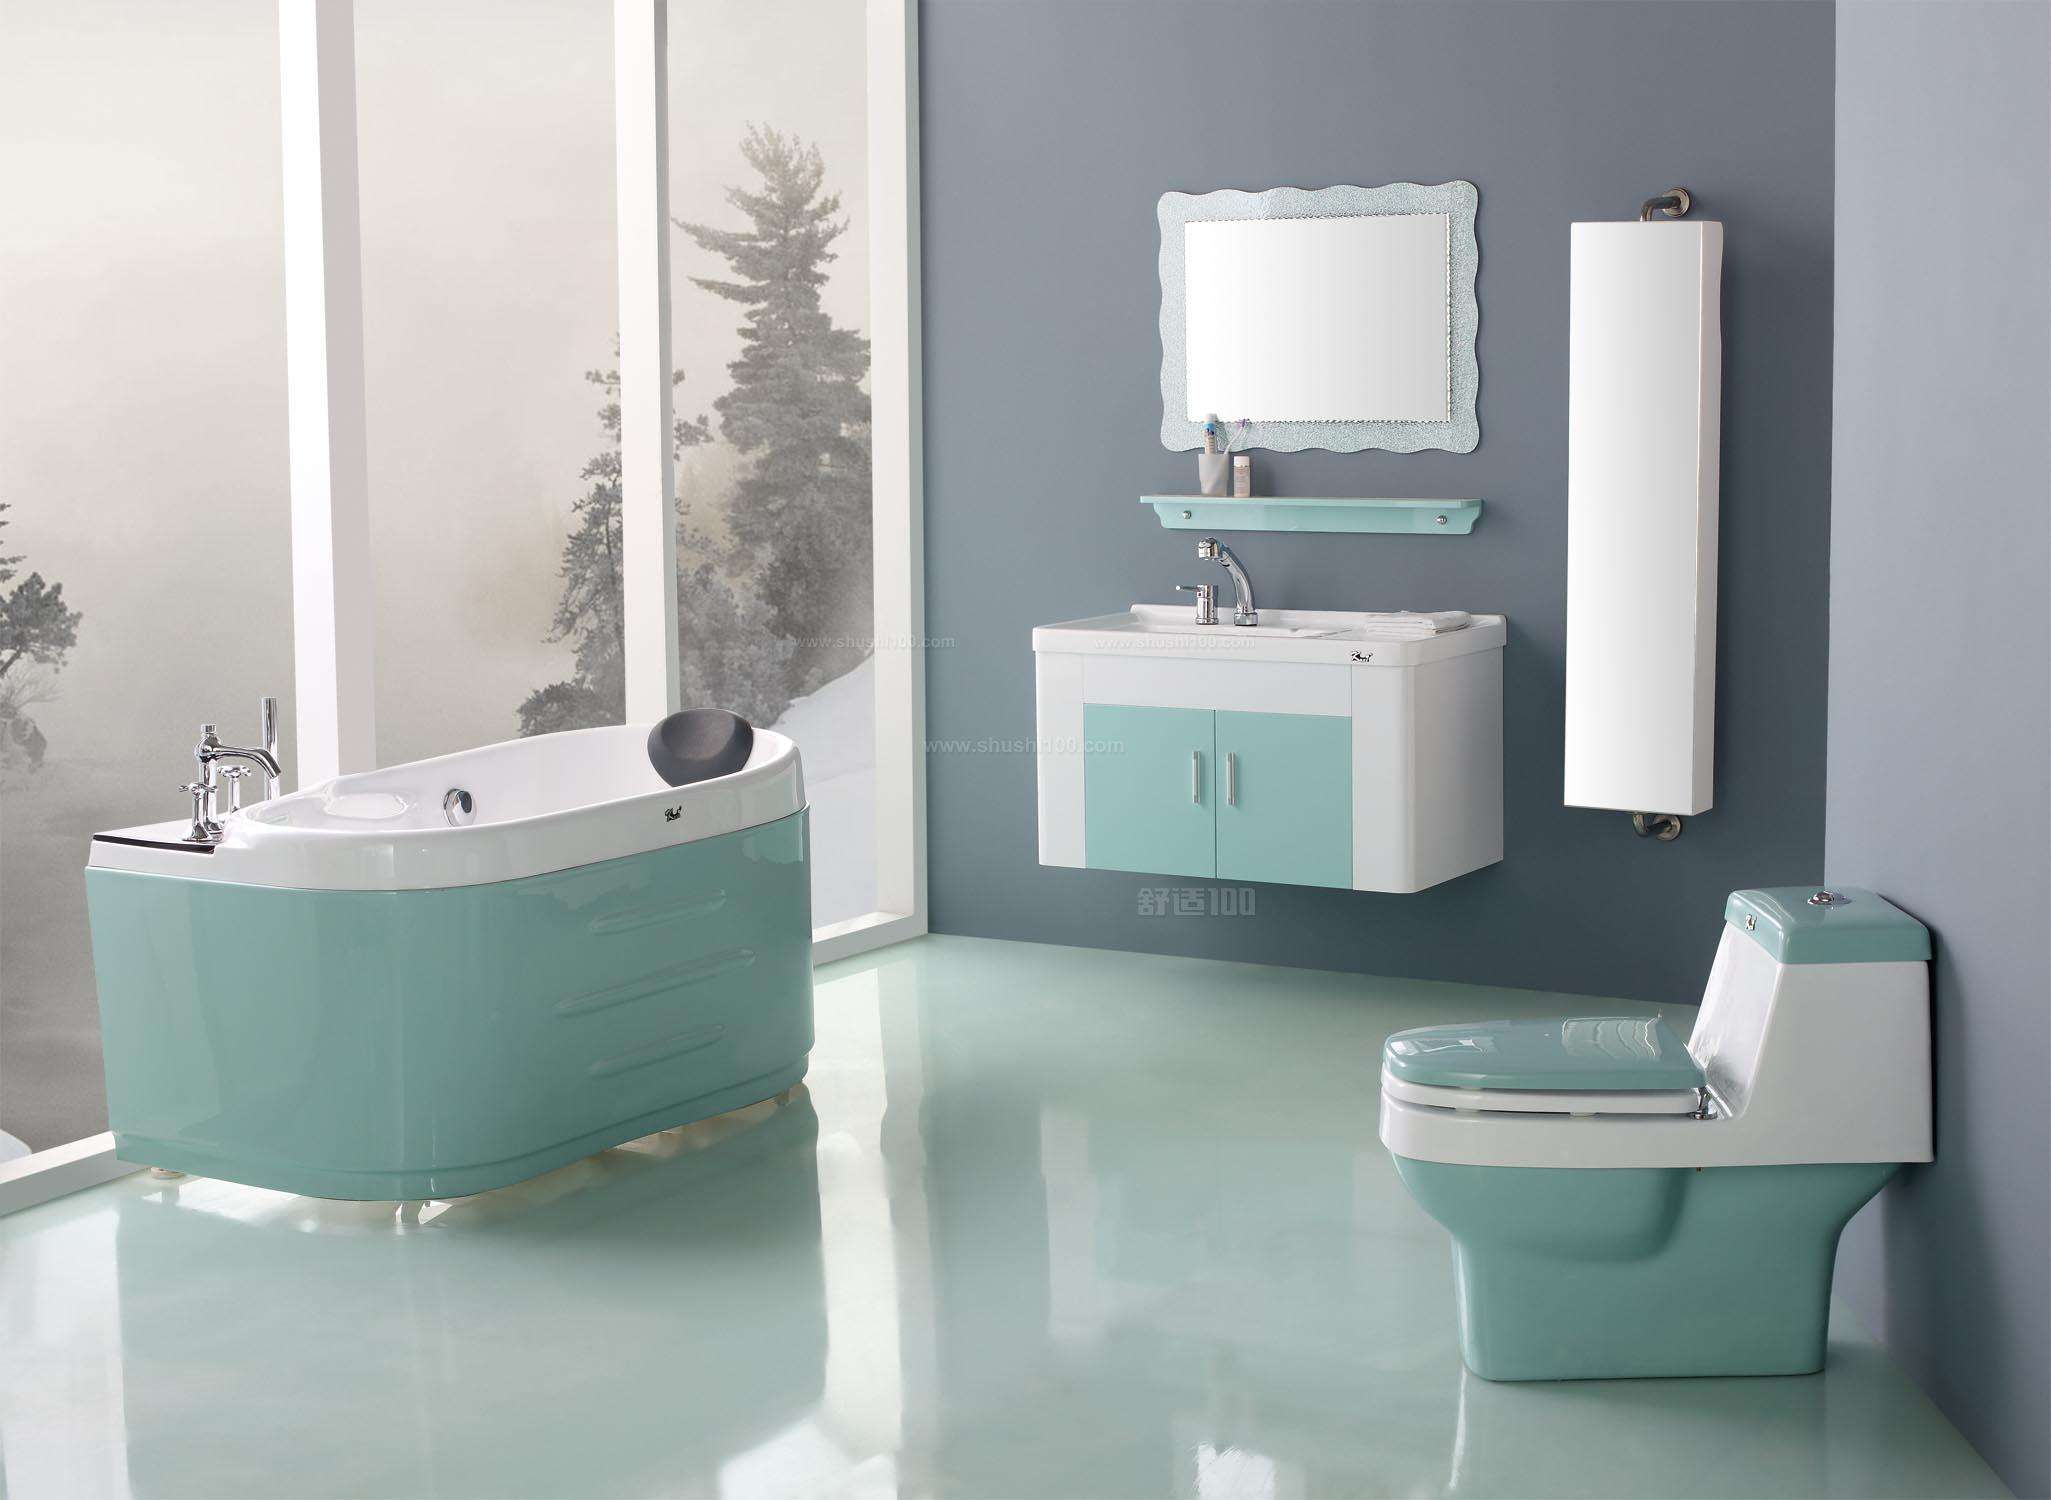 衛浴潔具小知識之衛浴設備粗略分類标準